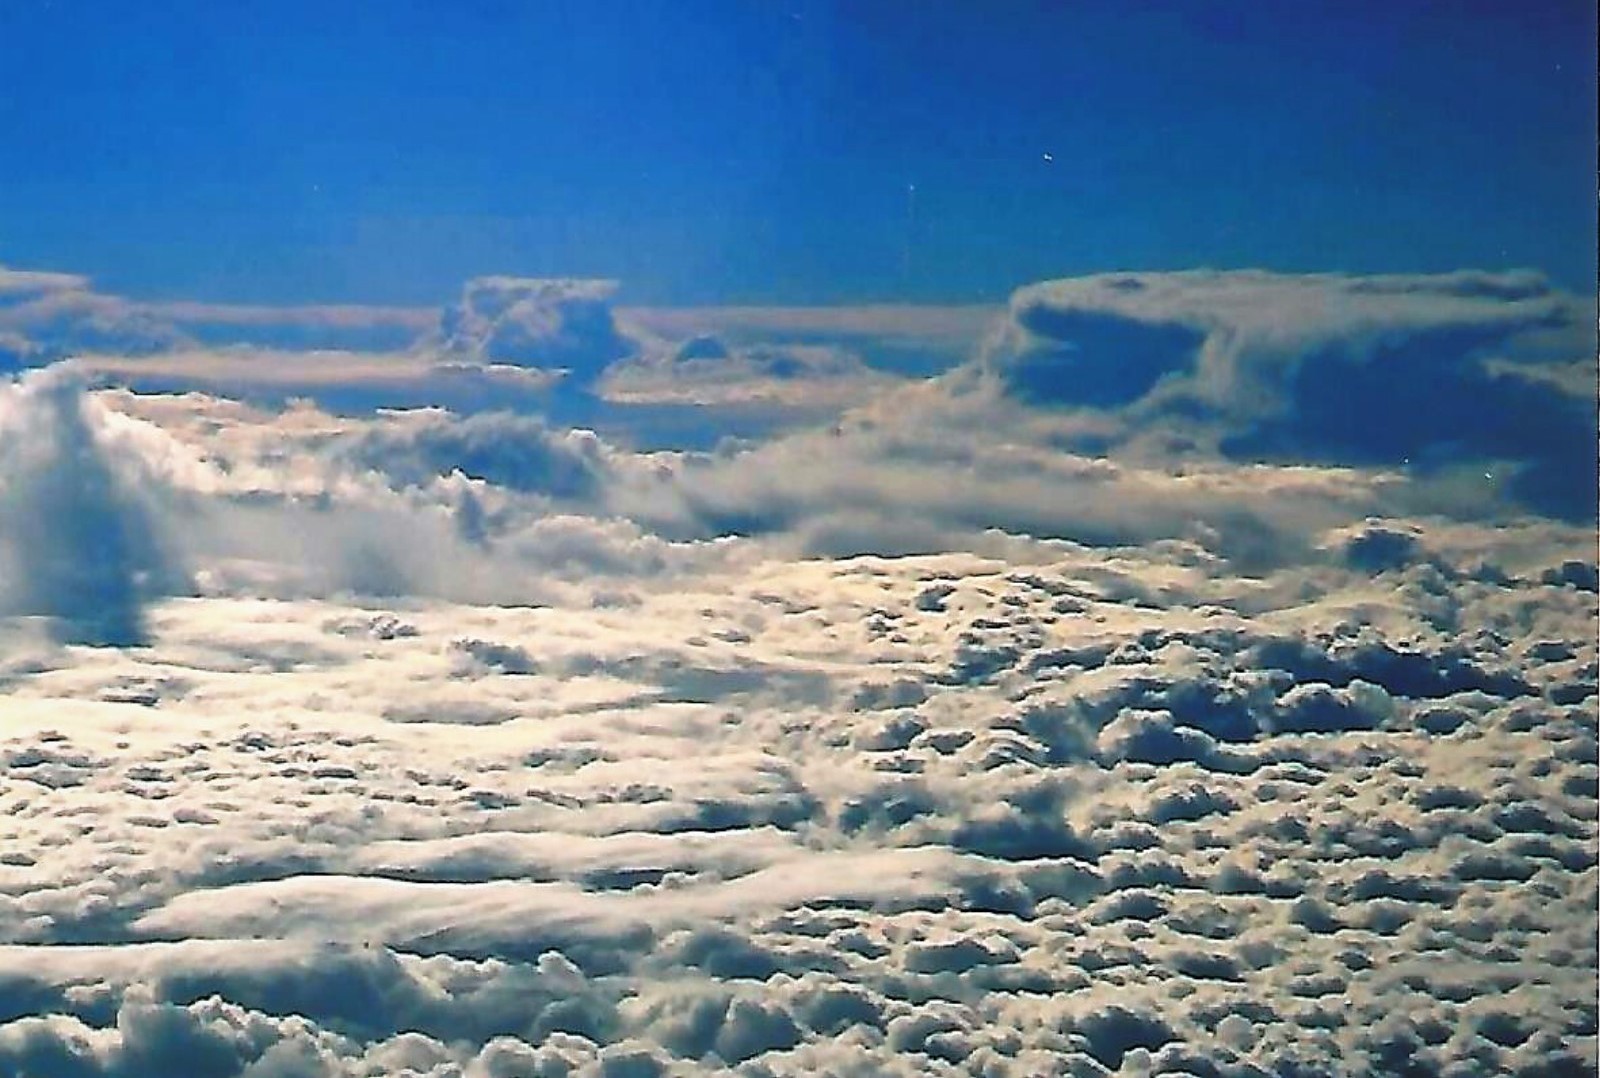 A sea of clouds...